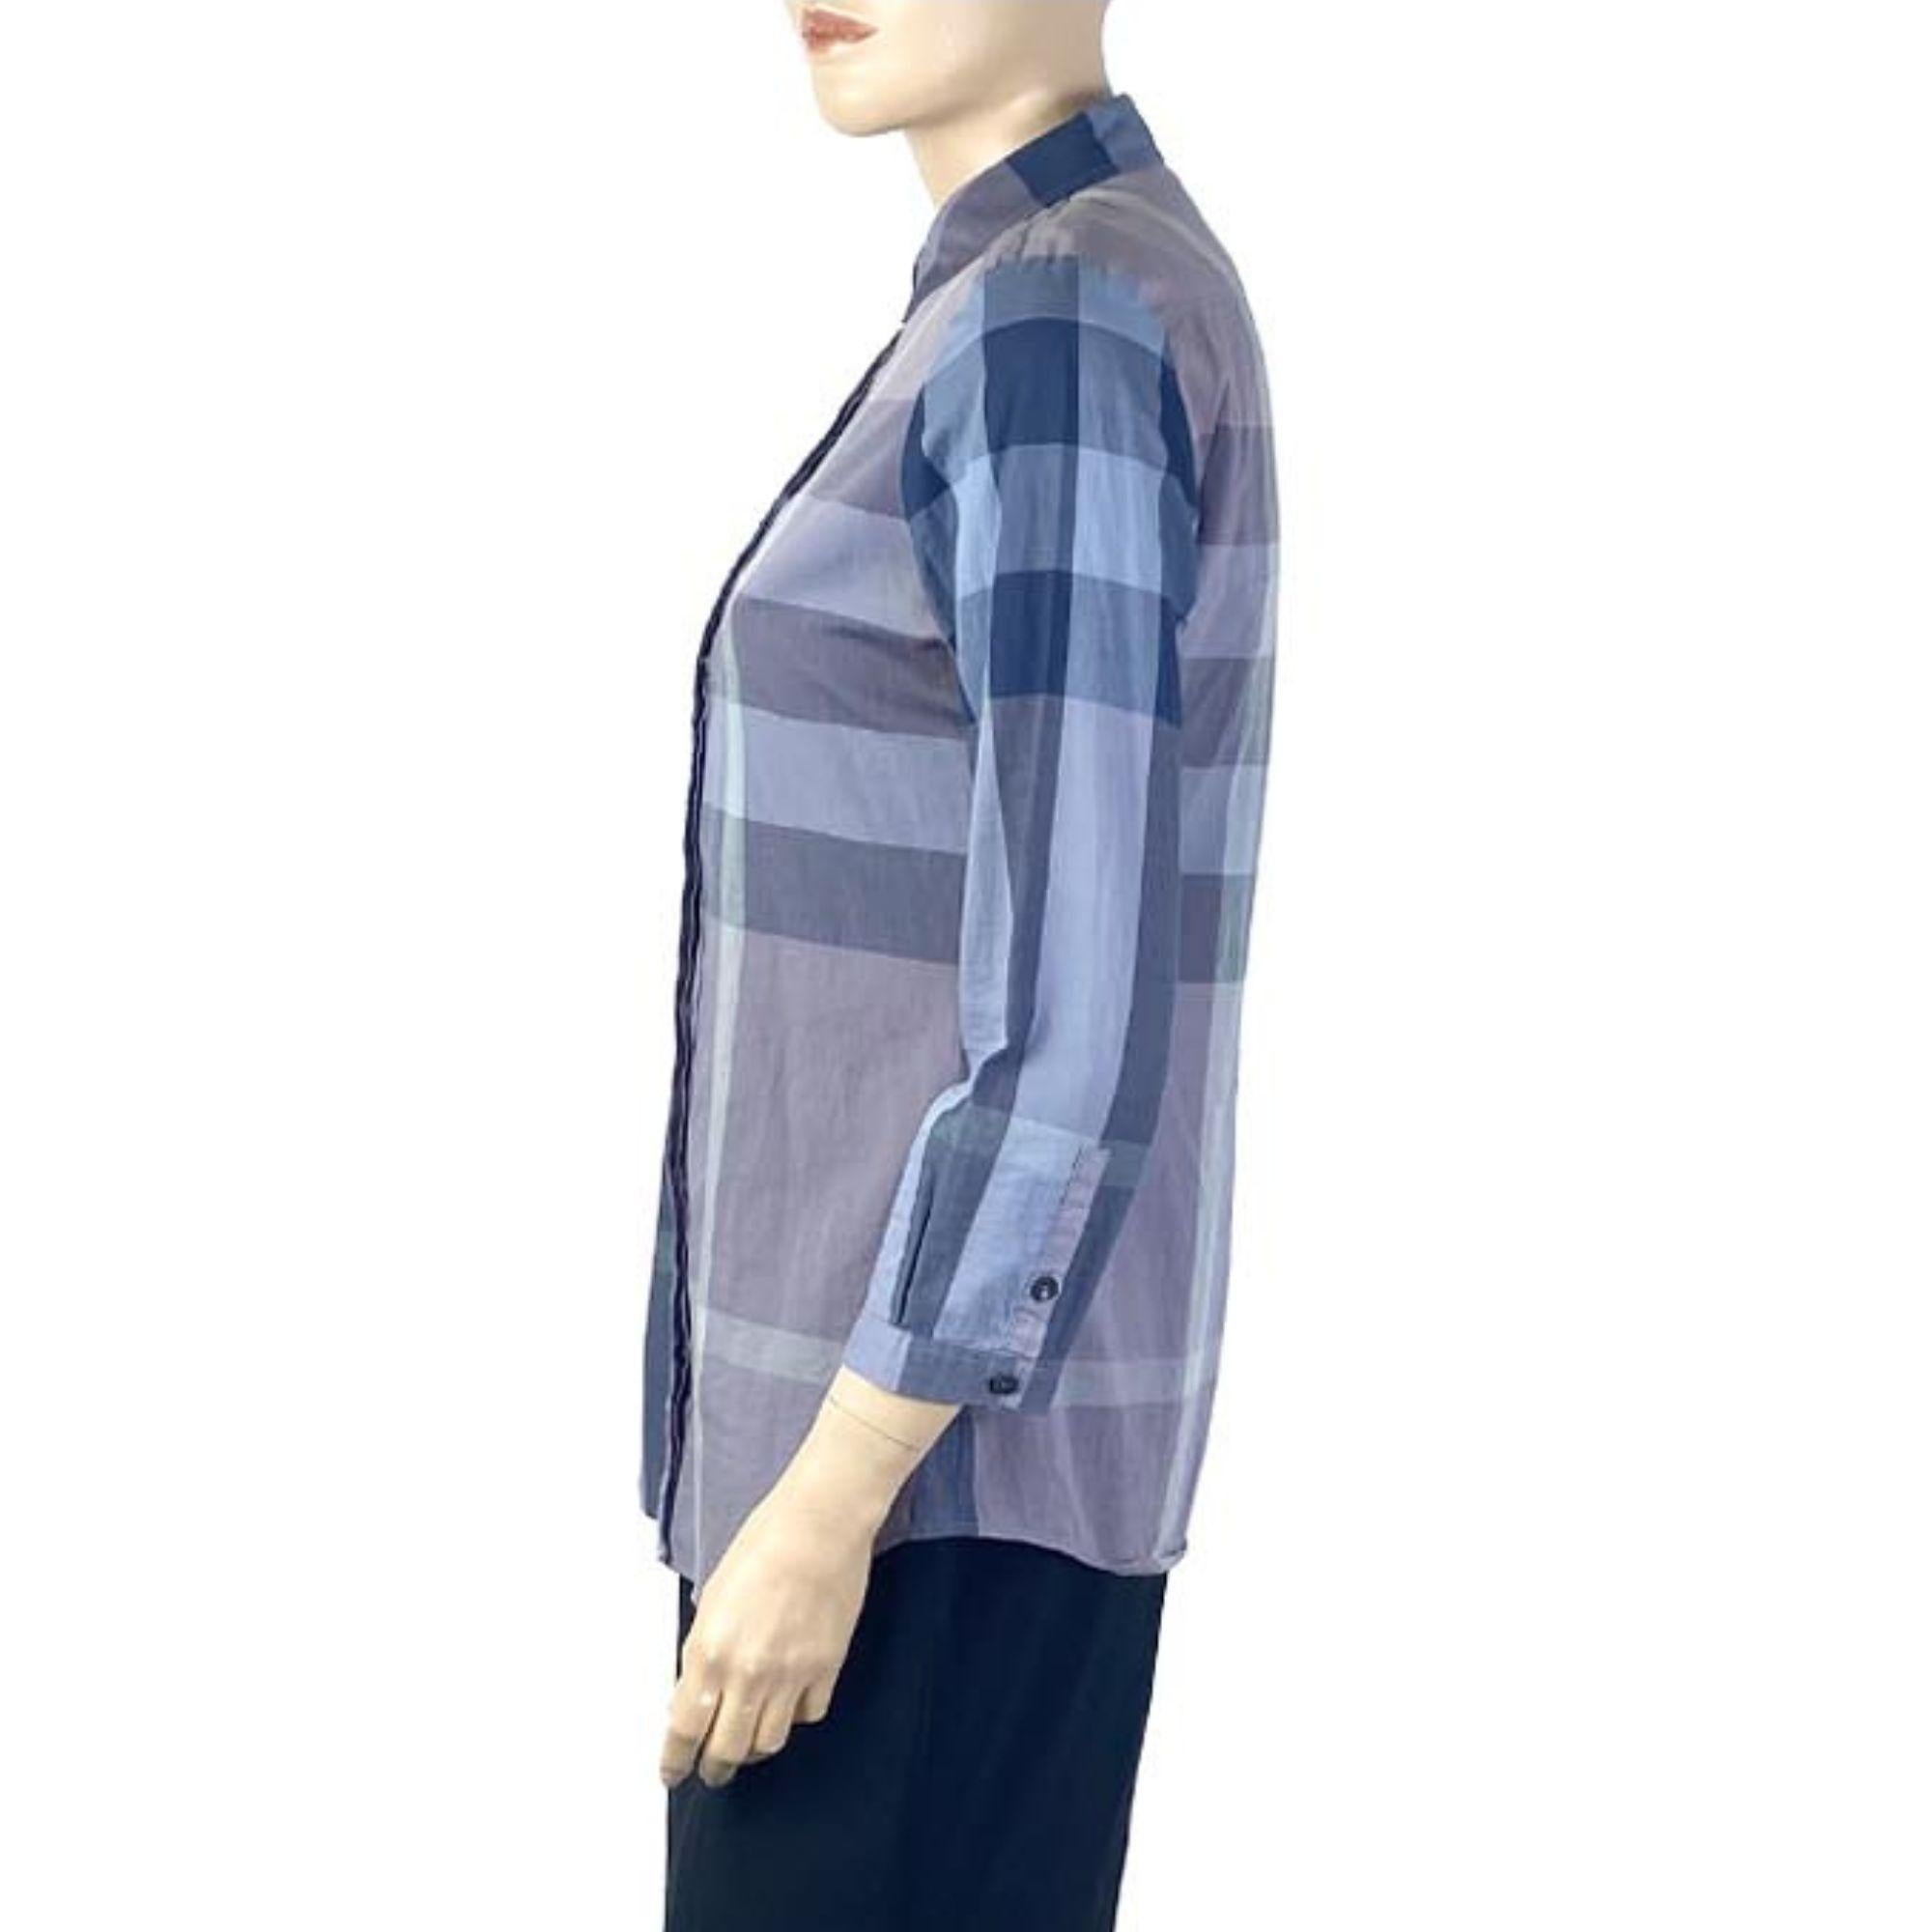 Burberry klassisches blau kariertes Hemd mit Knopfleiste.

Zusätzliche Informationen:
Tag Größe: Small Petite
Brustumfang: 86cm
Taille: 69cm
Hüfte: 94cm
Allgemeiner Zustand: Sehr gut